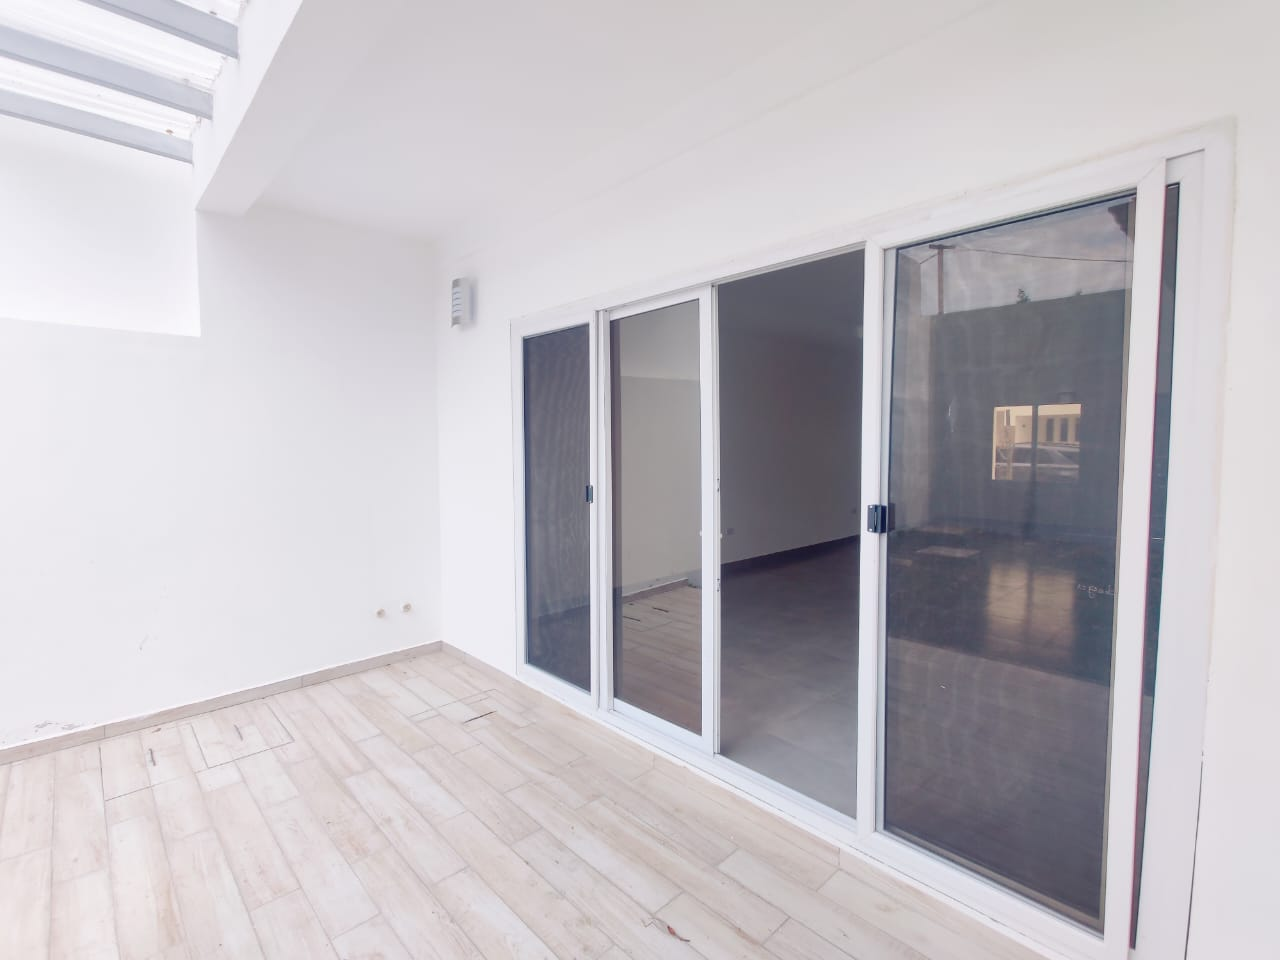 Puerta de vidrio corrediza con acceso a la sala y patio trasero, pared de concreto color blanco y piso de cerámica estilo madera.